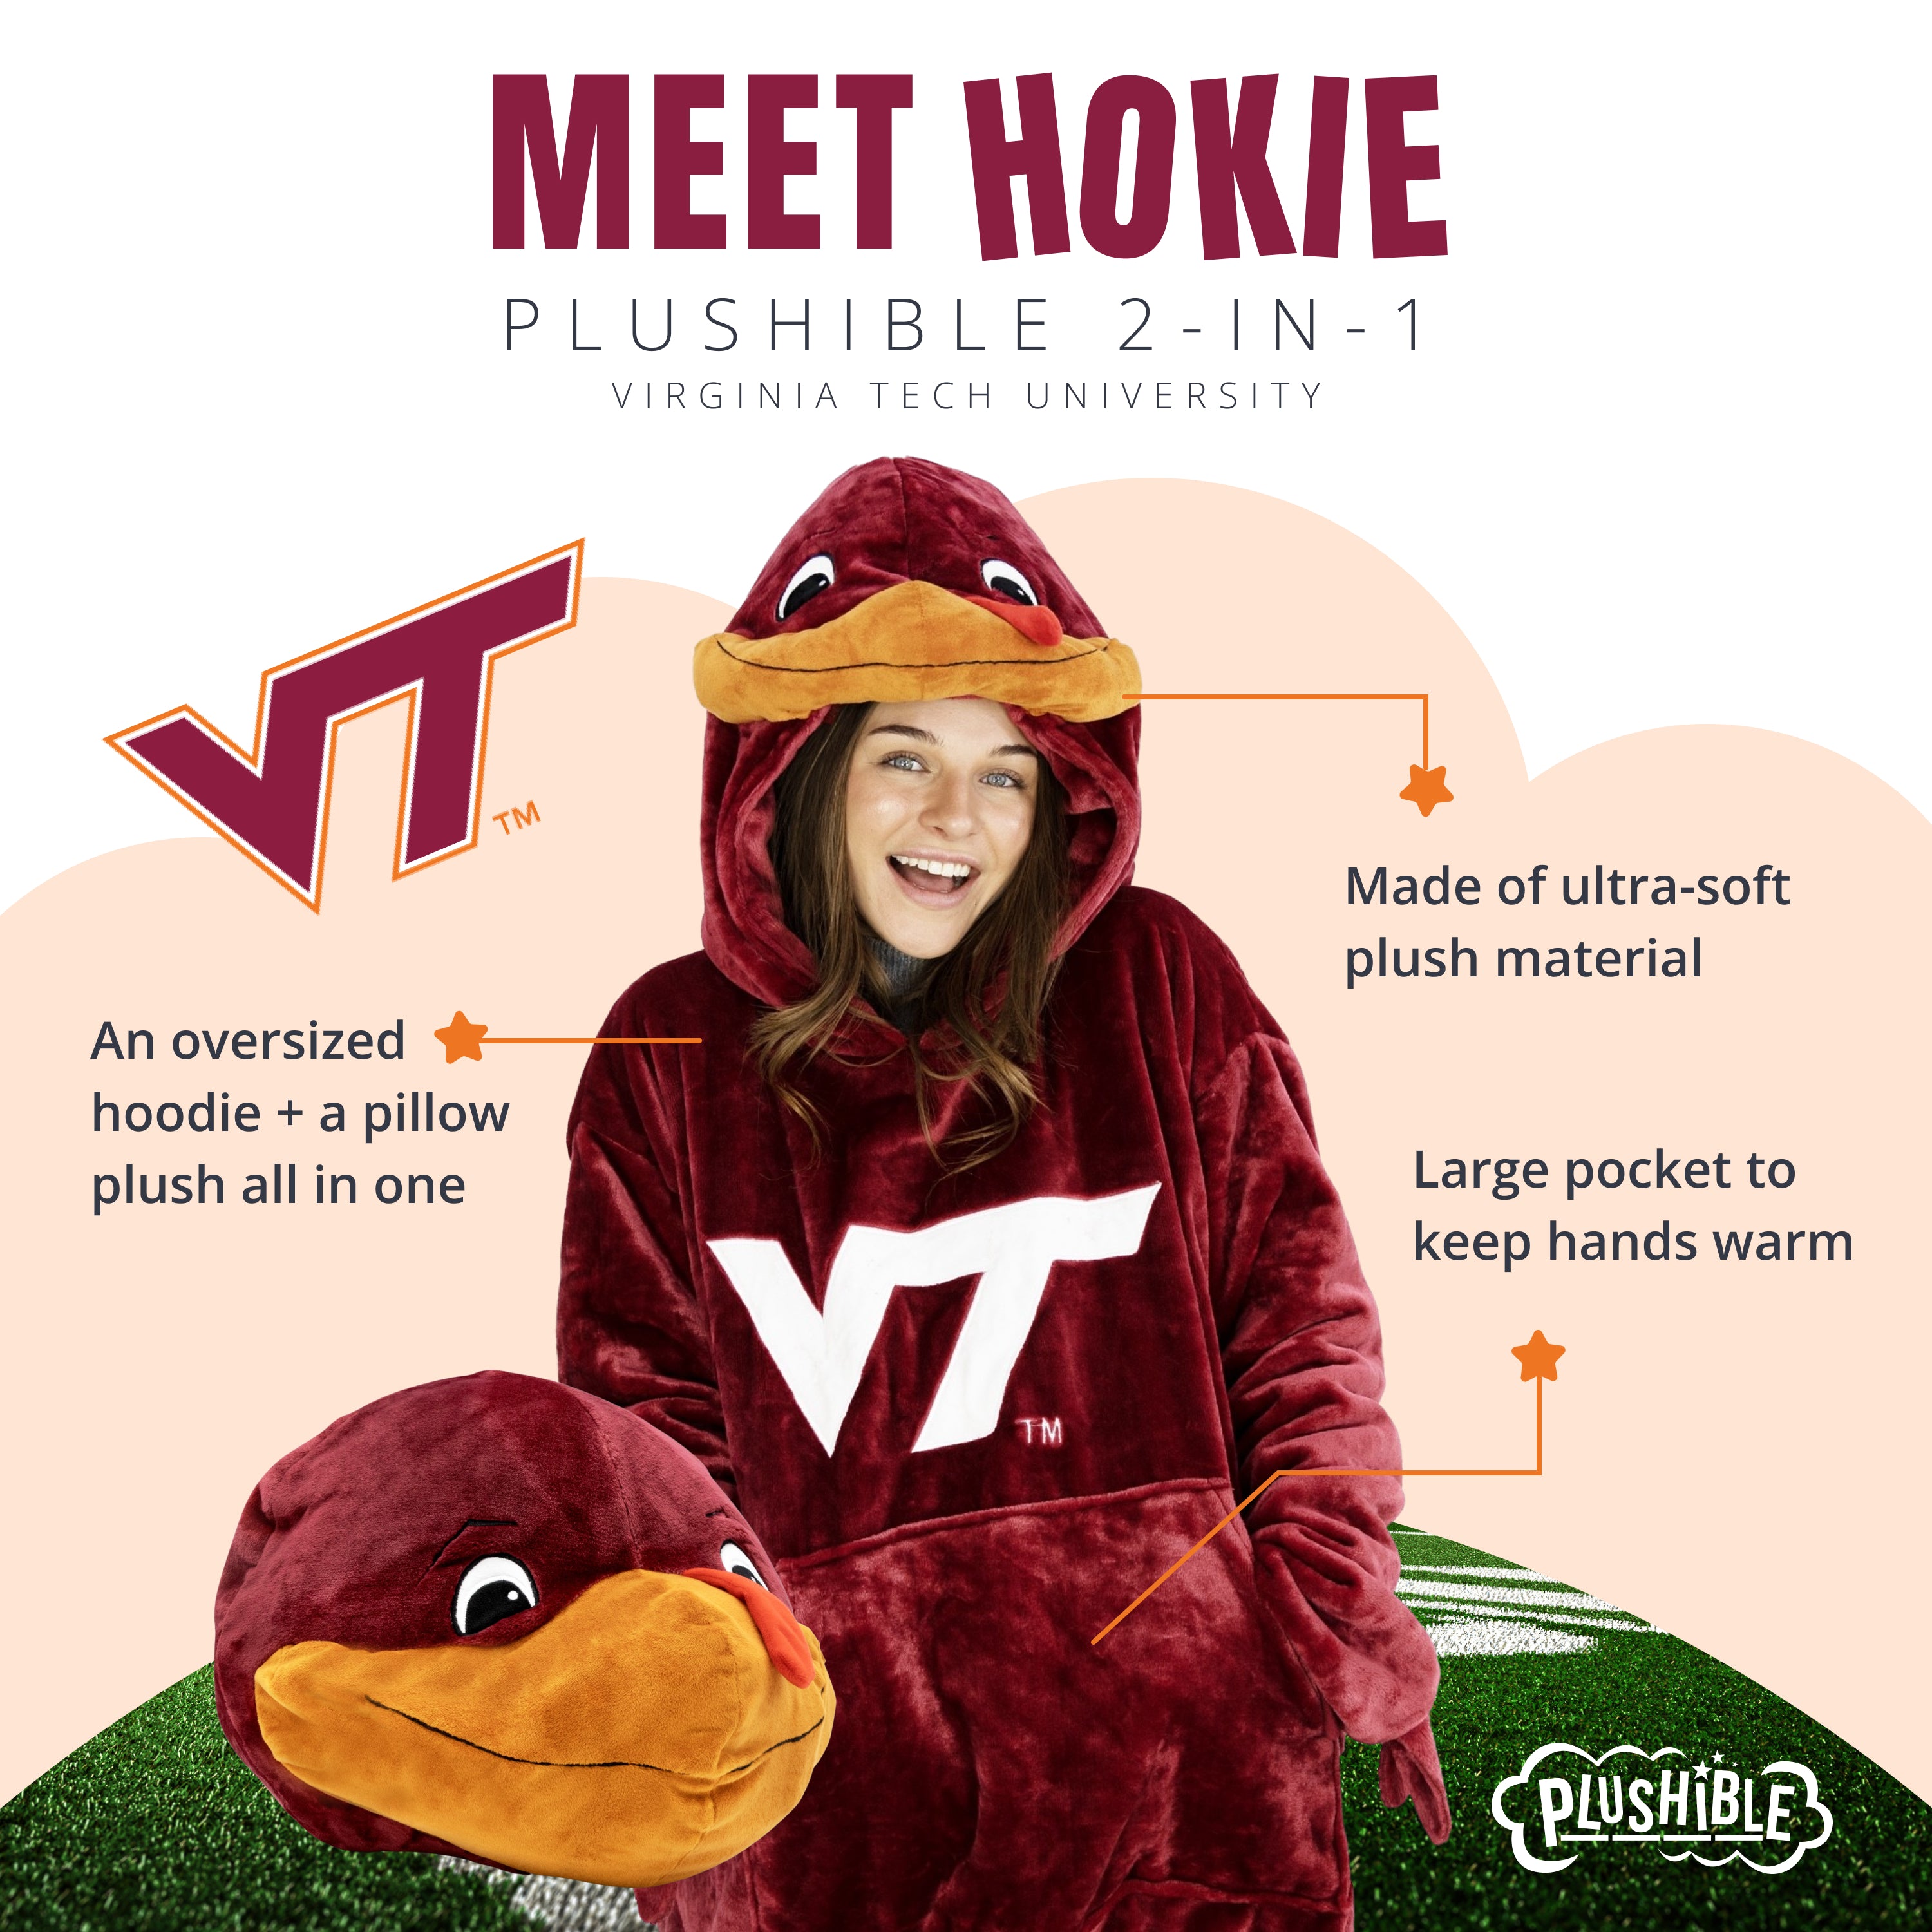 Virginia Tech Hokie Snugible | Blanket Hoodie & Pillow